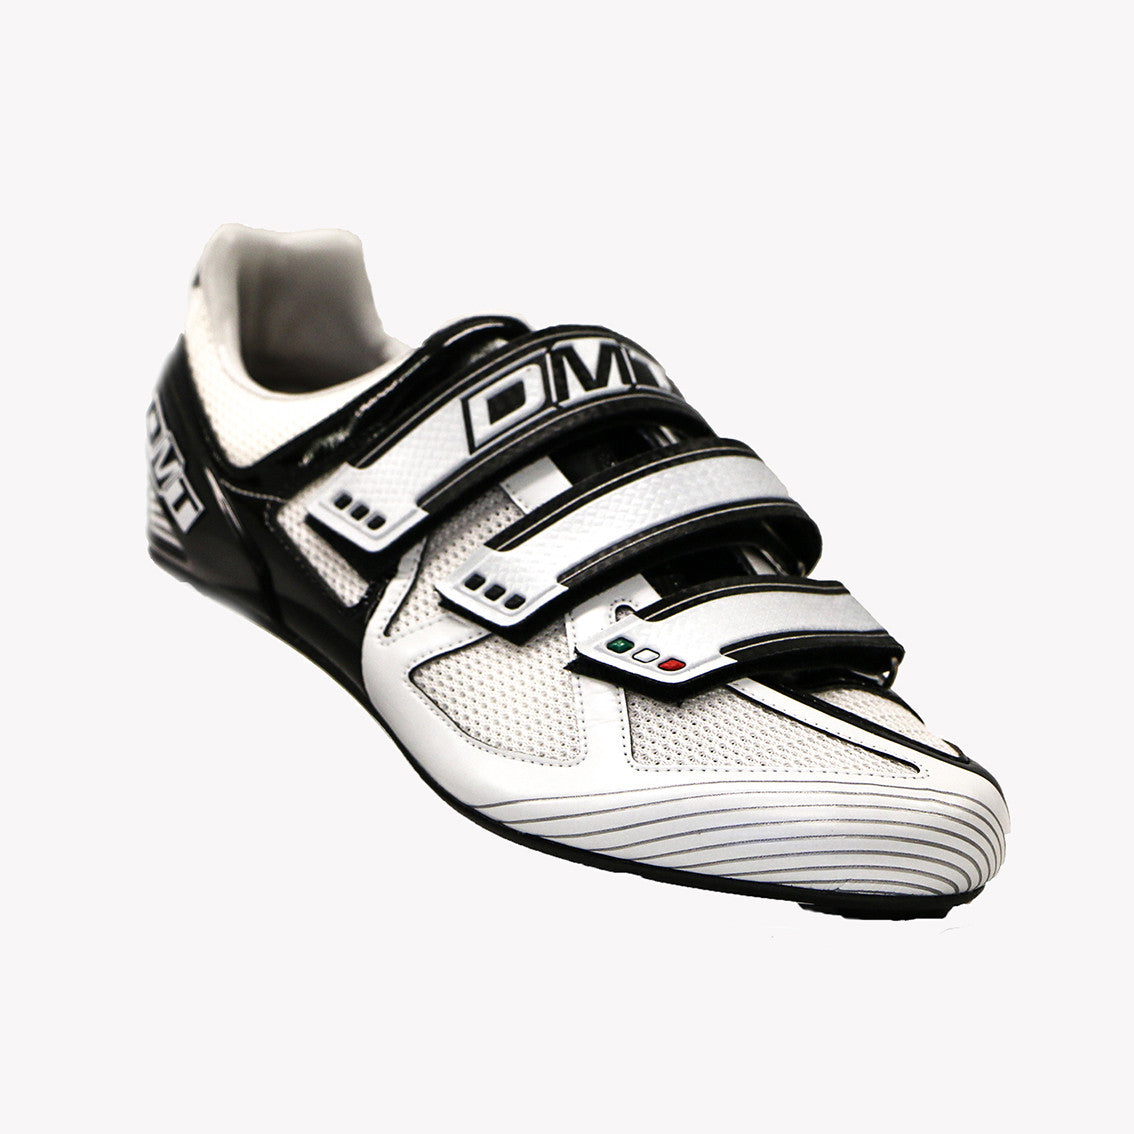 speedplay bike shoes